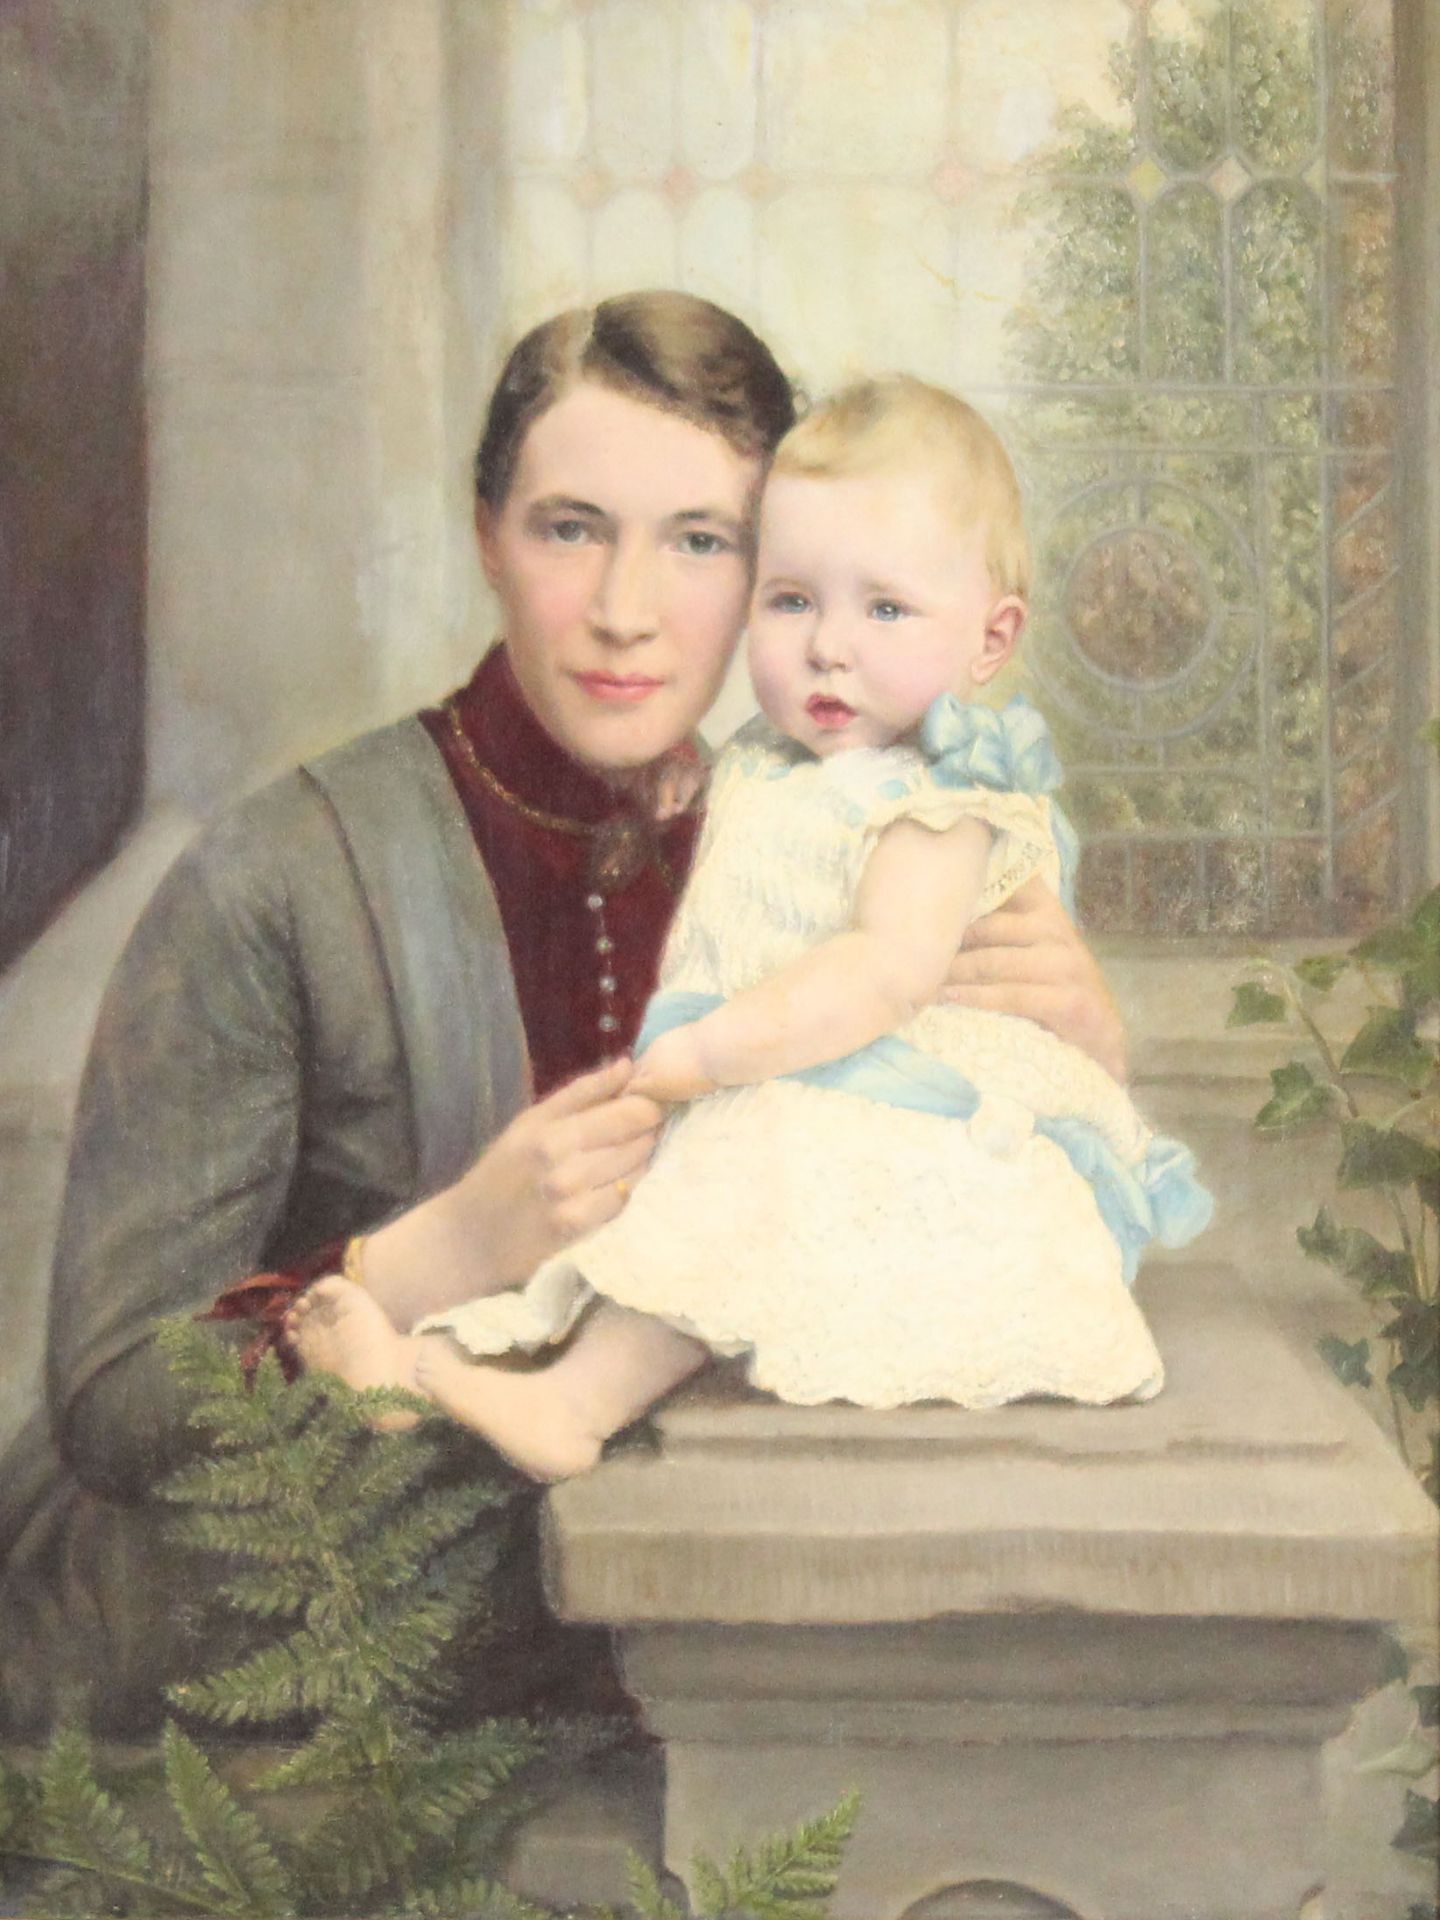 UNSIGNIERT (XIX - XX). Mutter mit Kind.73 cm x 56 cm. Gemälde. Öl auf Leinwand. Keine Signatur